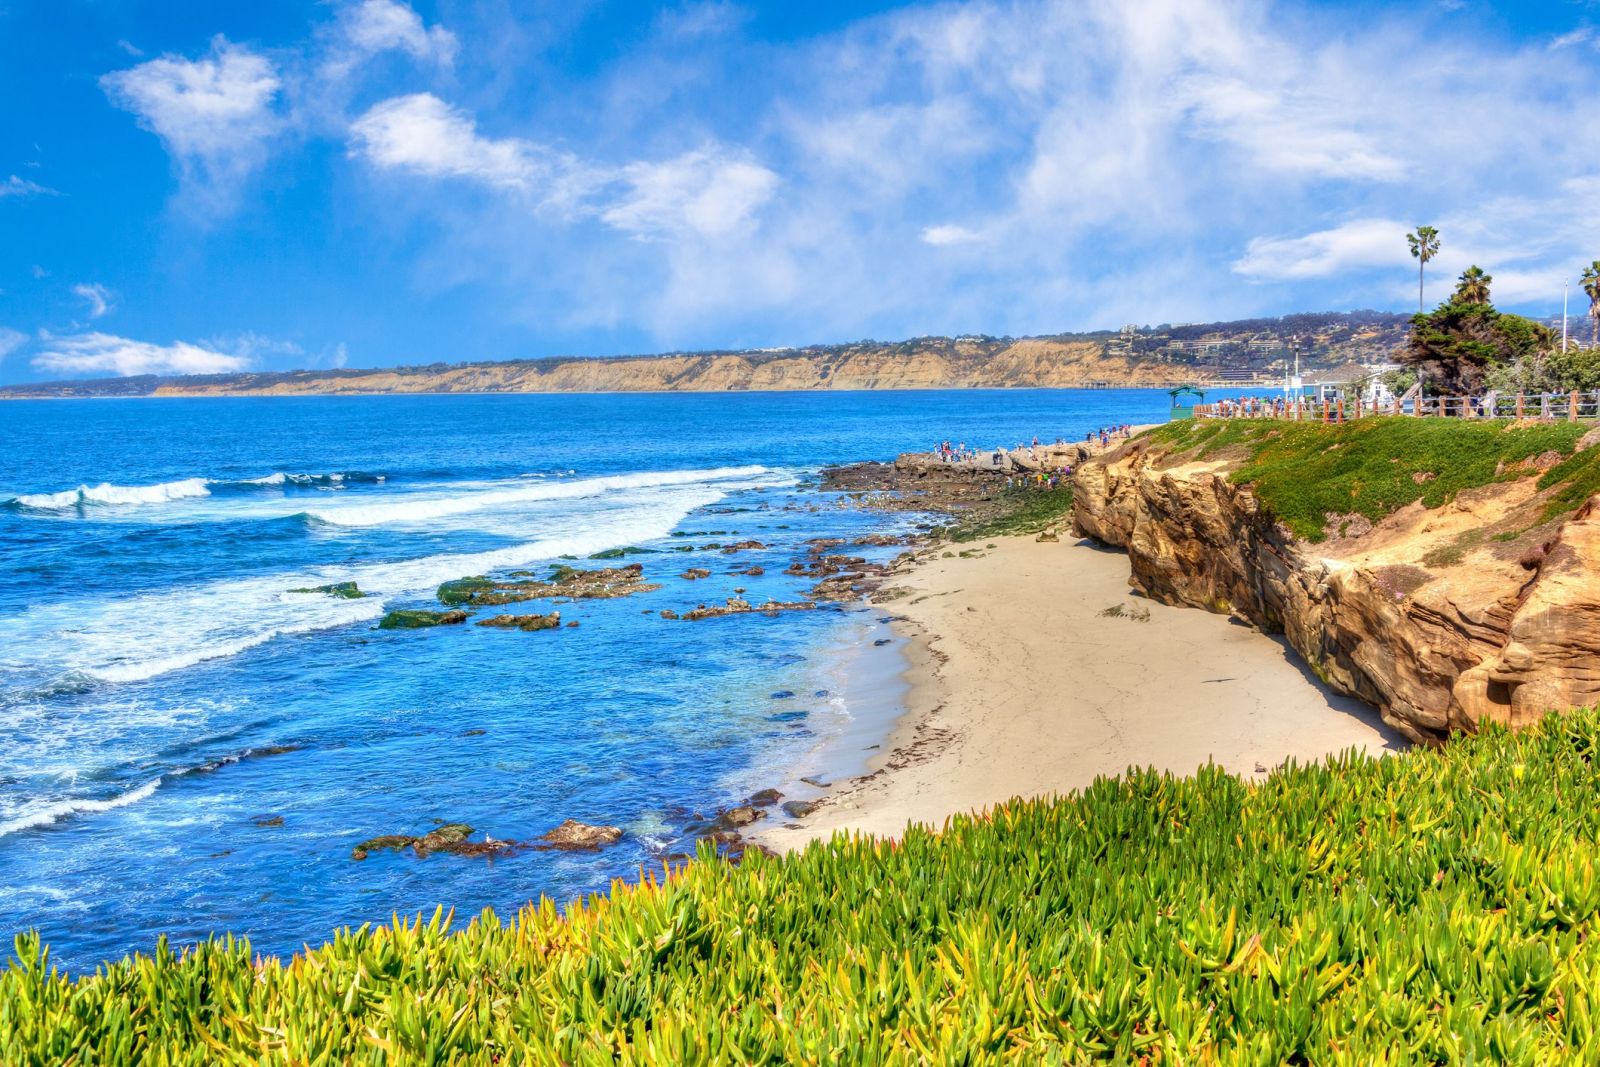 Buổi chiều đầy nắng tại thị trấn ven biển xinh đẹp nổi tiếng của bãi biển La Jolla Cove ở San Diego, California.